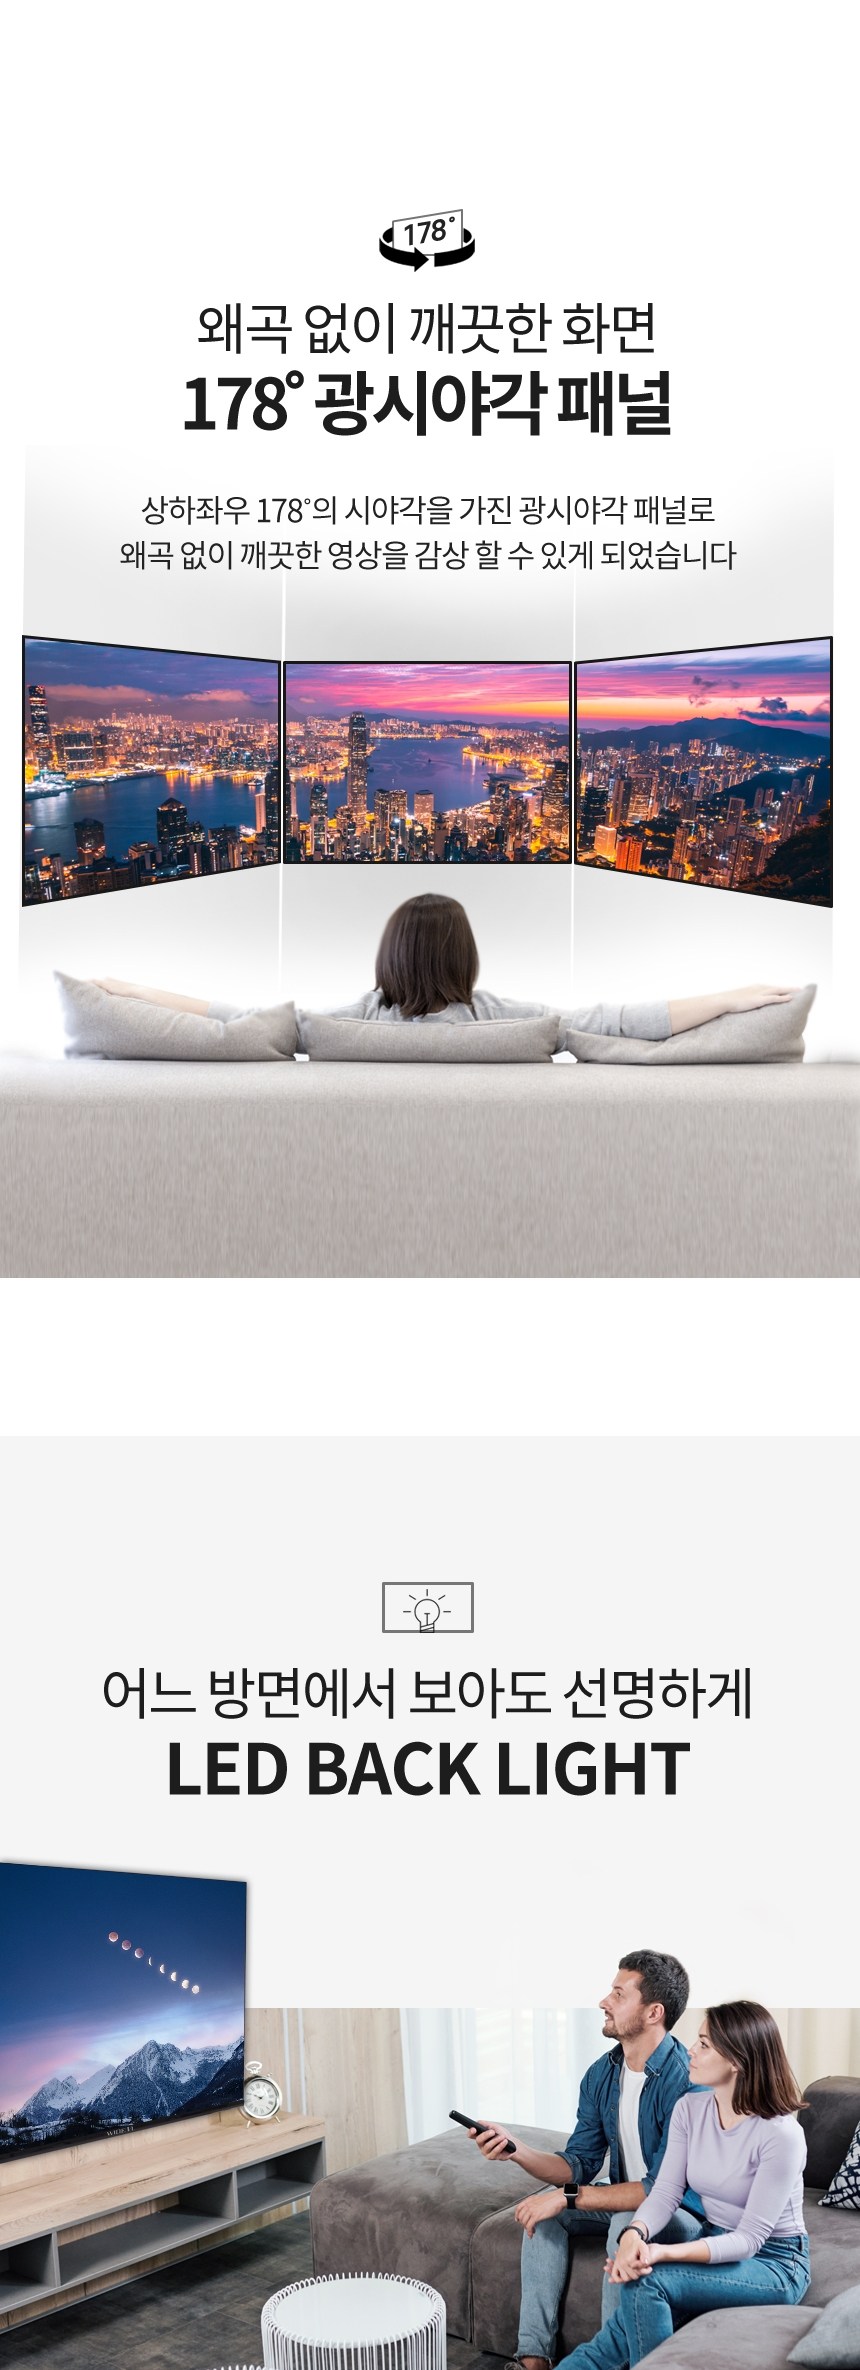 와이드뷰 구글 스마트TV 안드로이드 4K UHD109cm(43인치) · GTWV43UHD-E1 · 스탠드형 · 자가설치